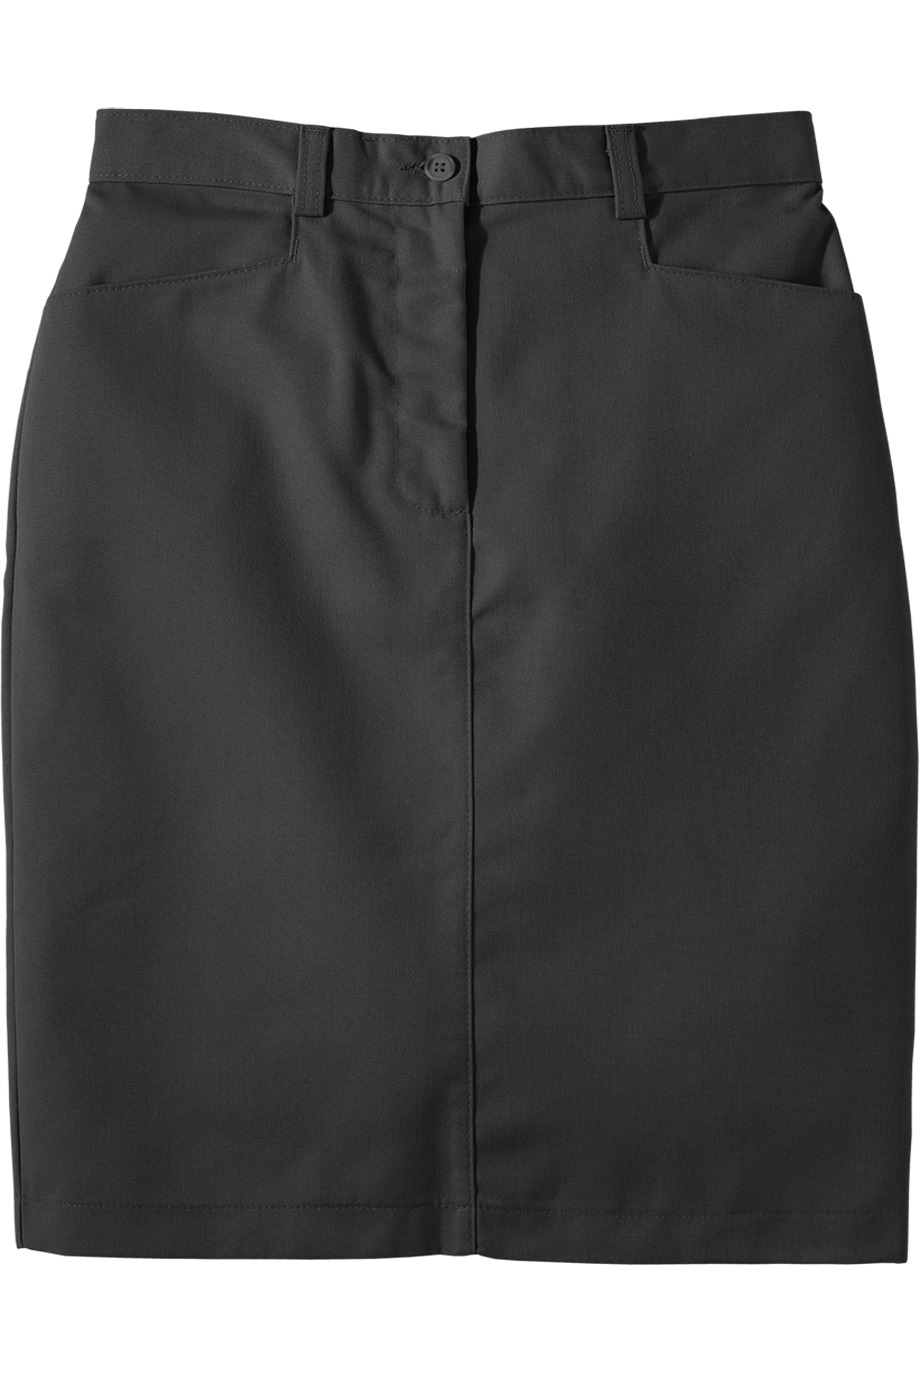 Edwards Garment 9711 - Women's Chino Skirt